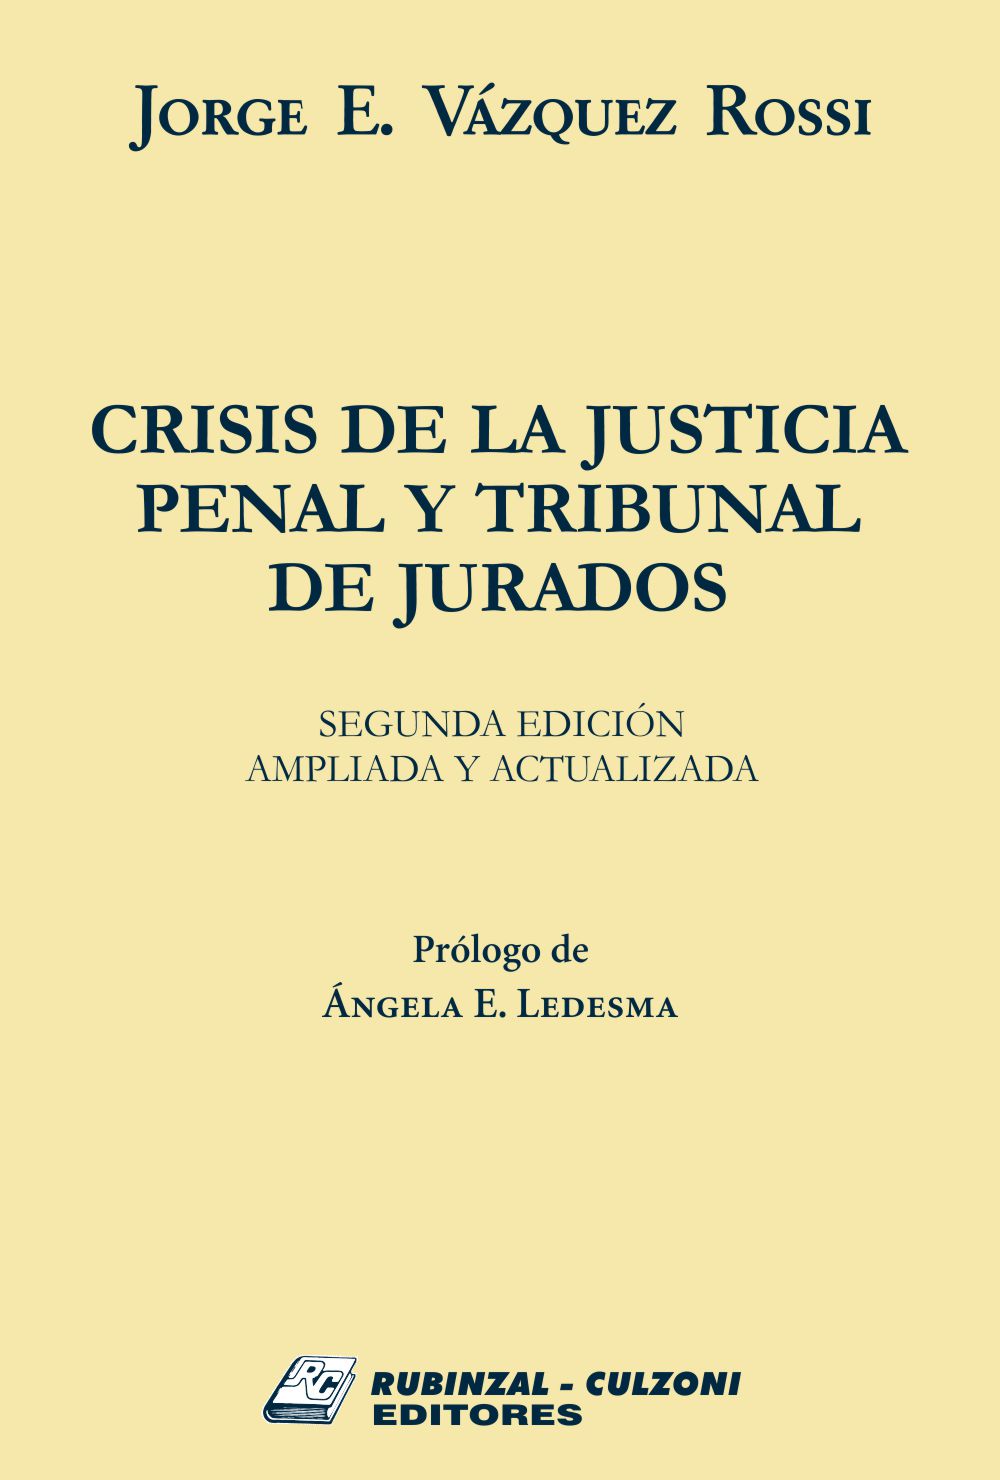 Crisis de la justicia penal y tribunal de jurados. 2ª edición ampliada y actualizada